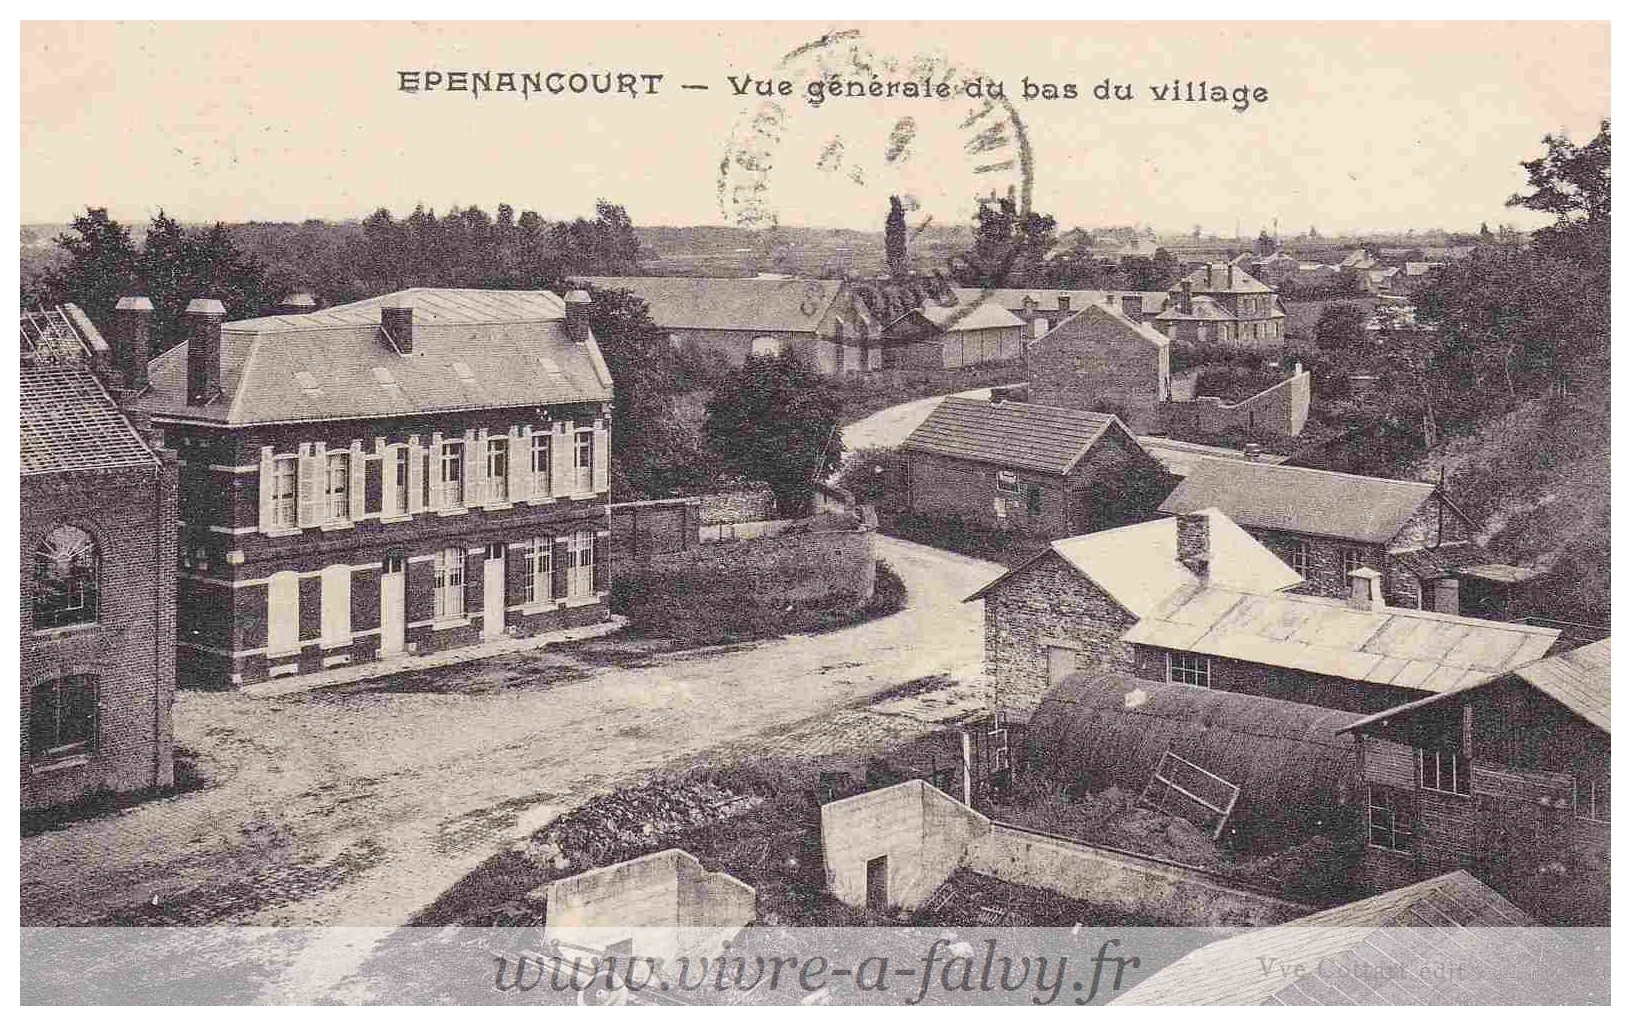 Epenancourt - Vue générale du bas du village